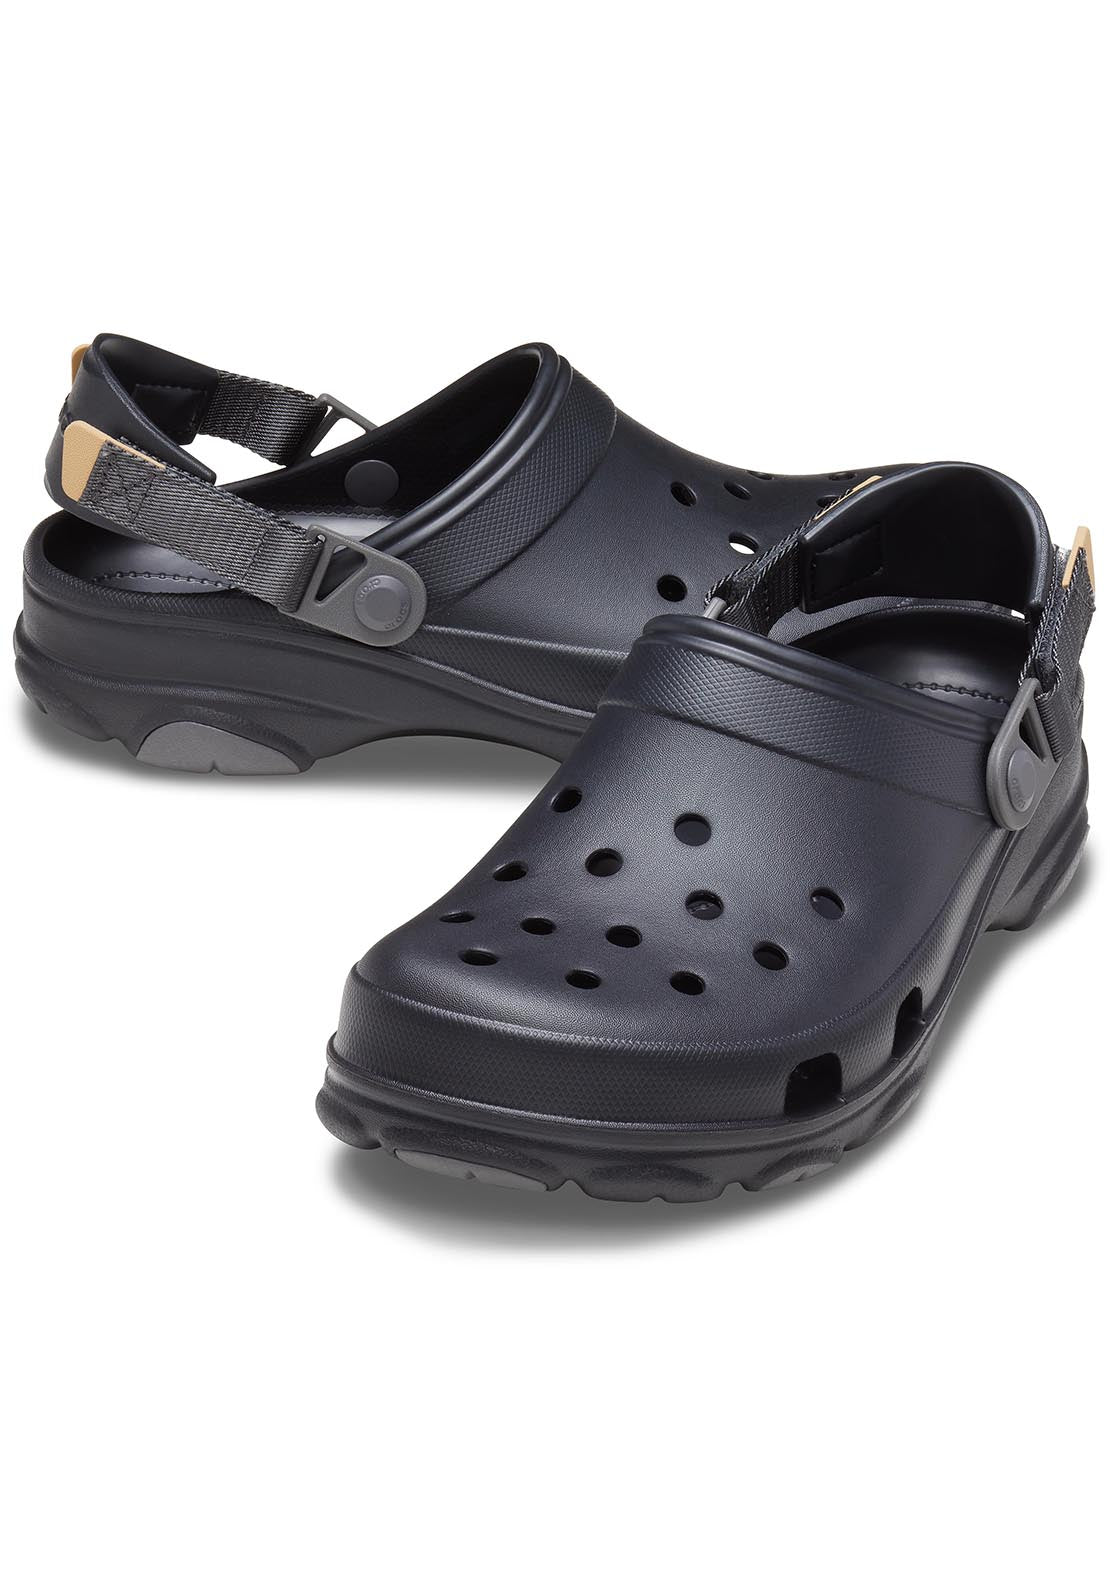 Crocs All Terrain Clog - Black 1 Shaws Department Stores